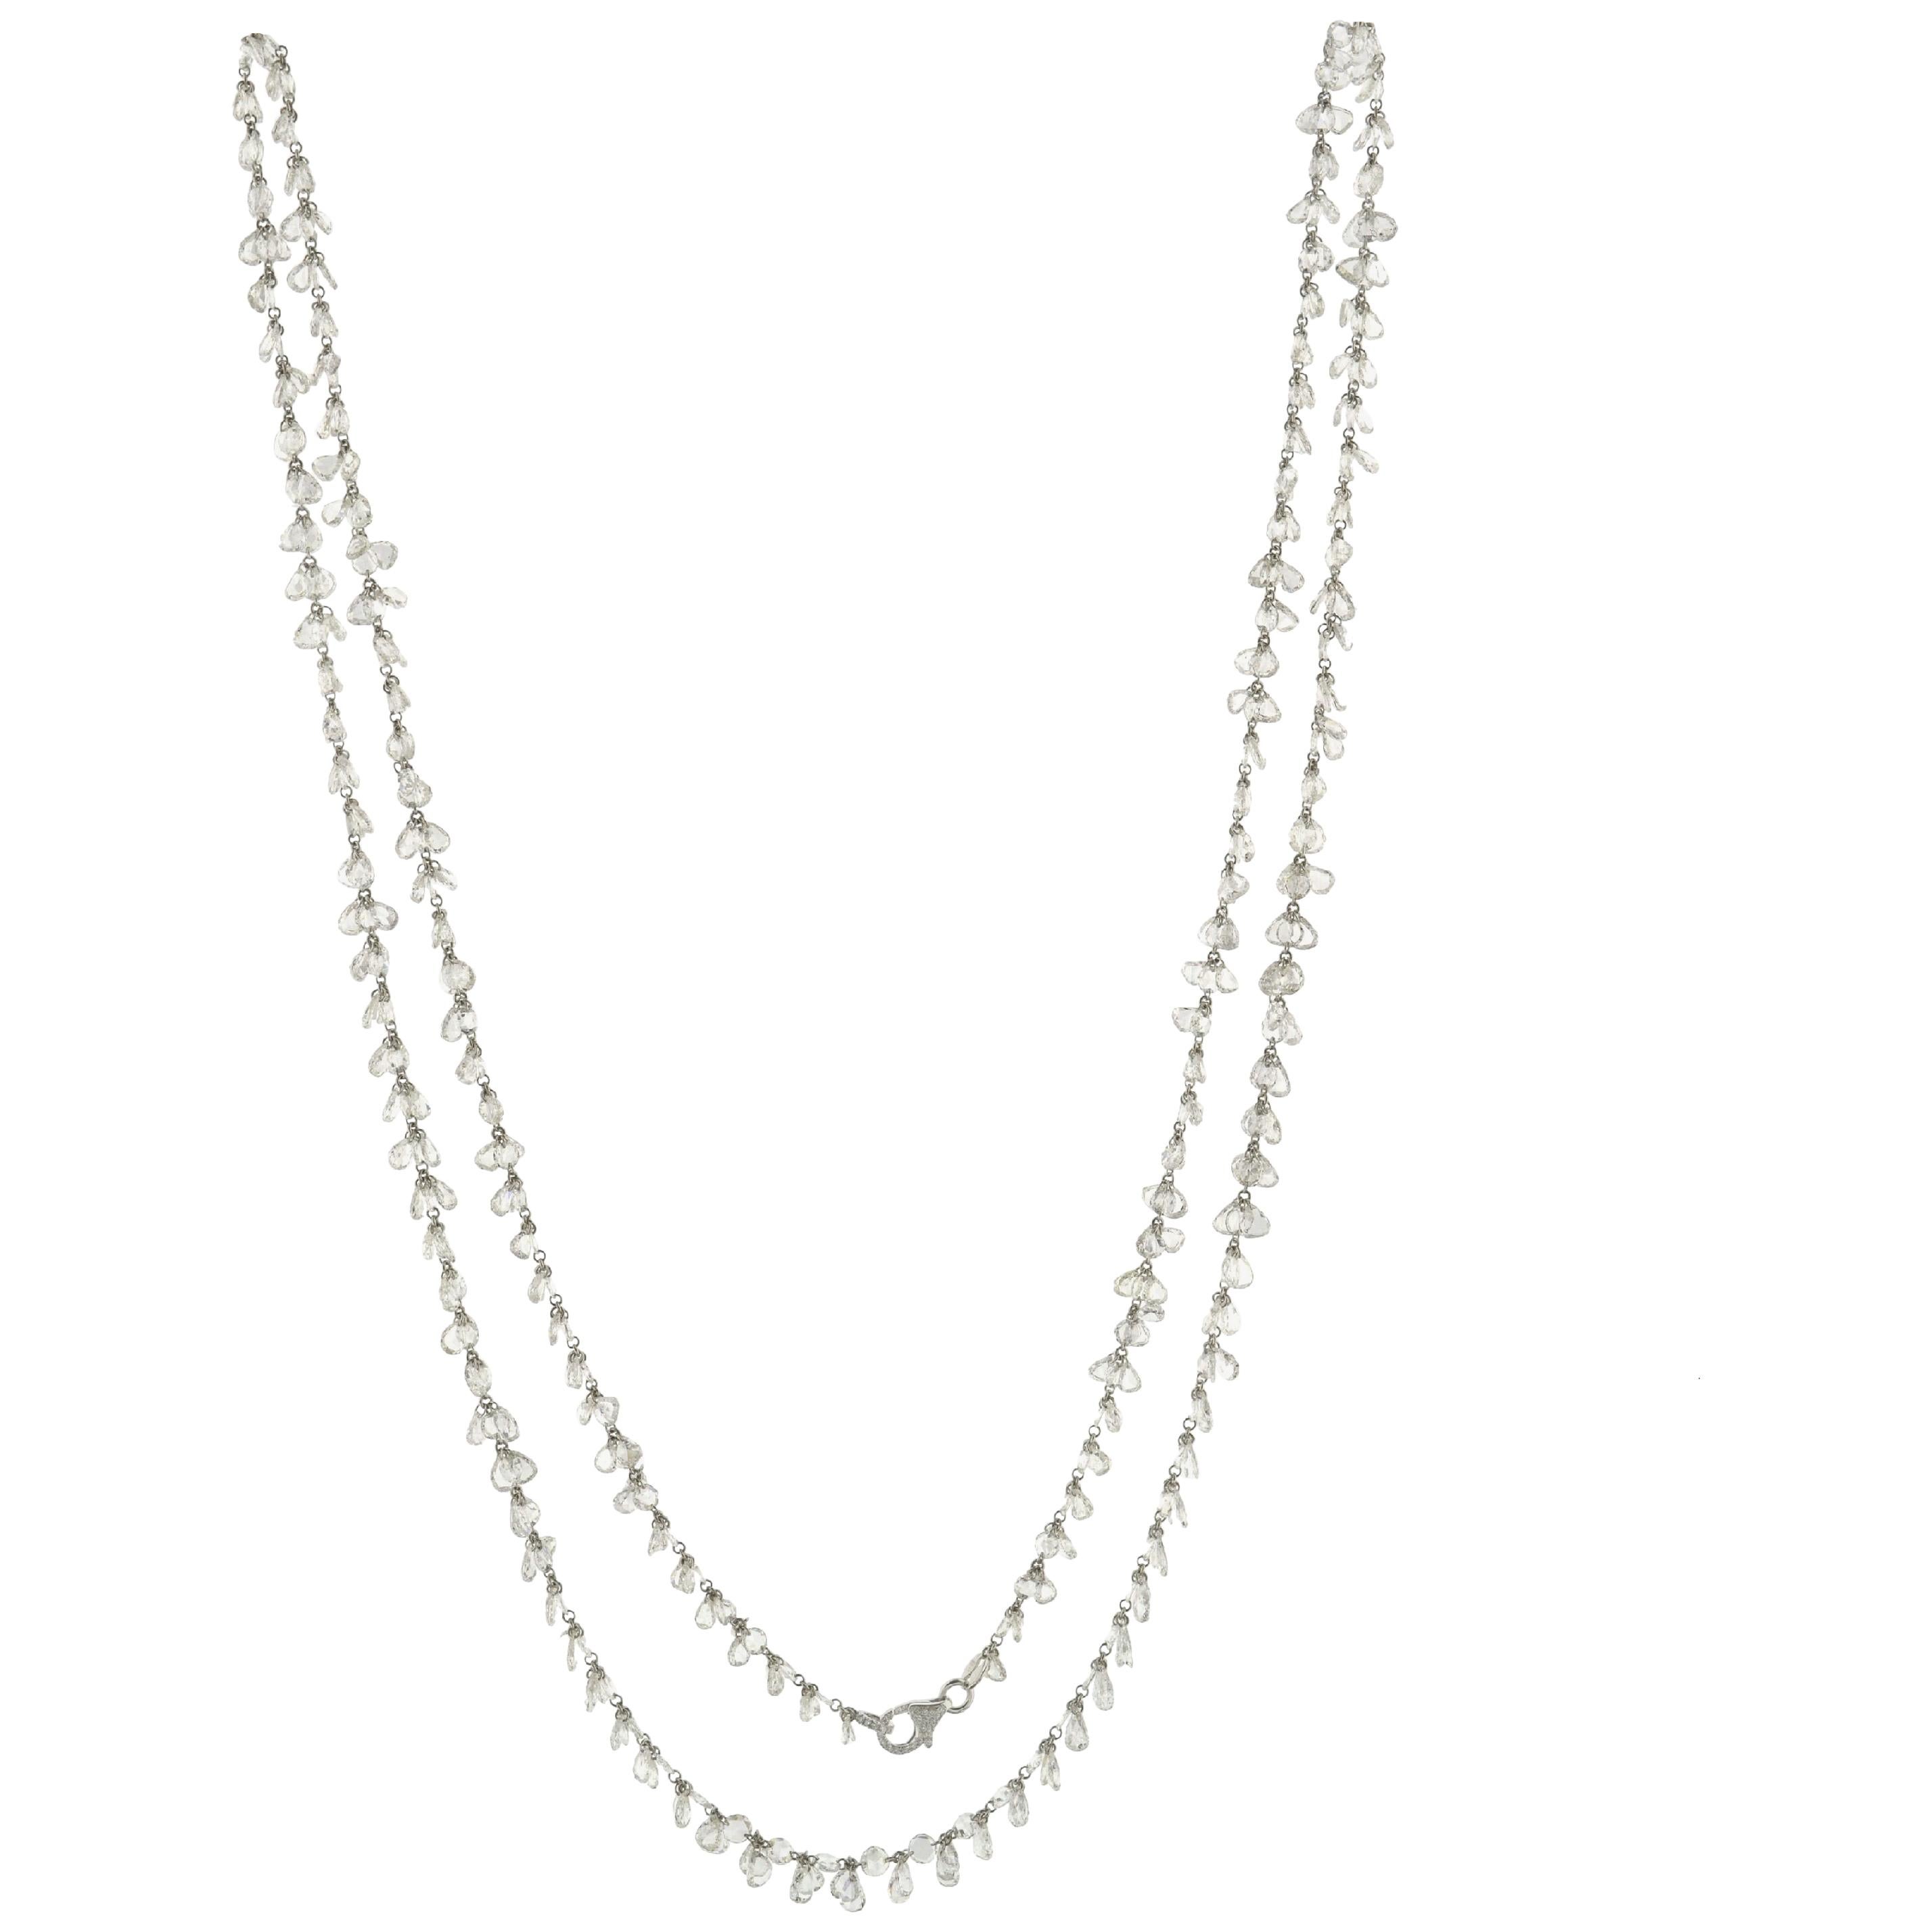 JR 60.11 Carat Rose Cut Diamond 18 Karat White Gold Dangling Necklace